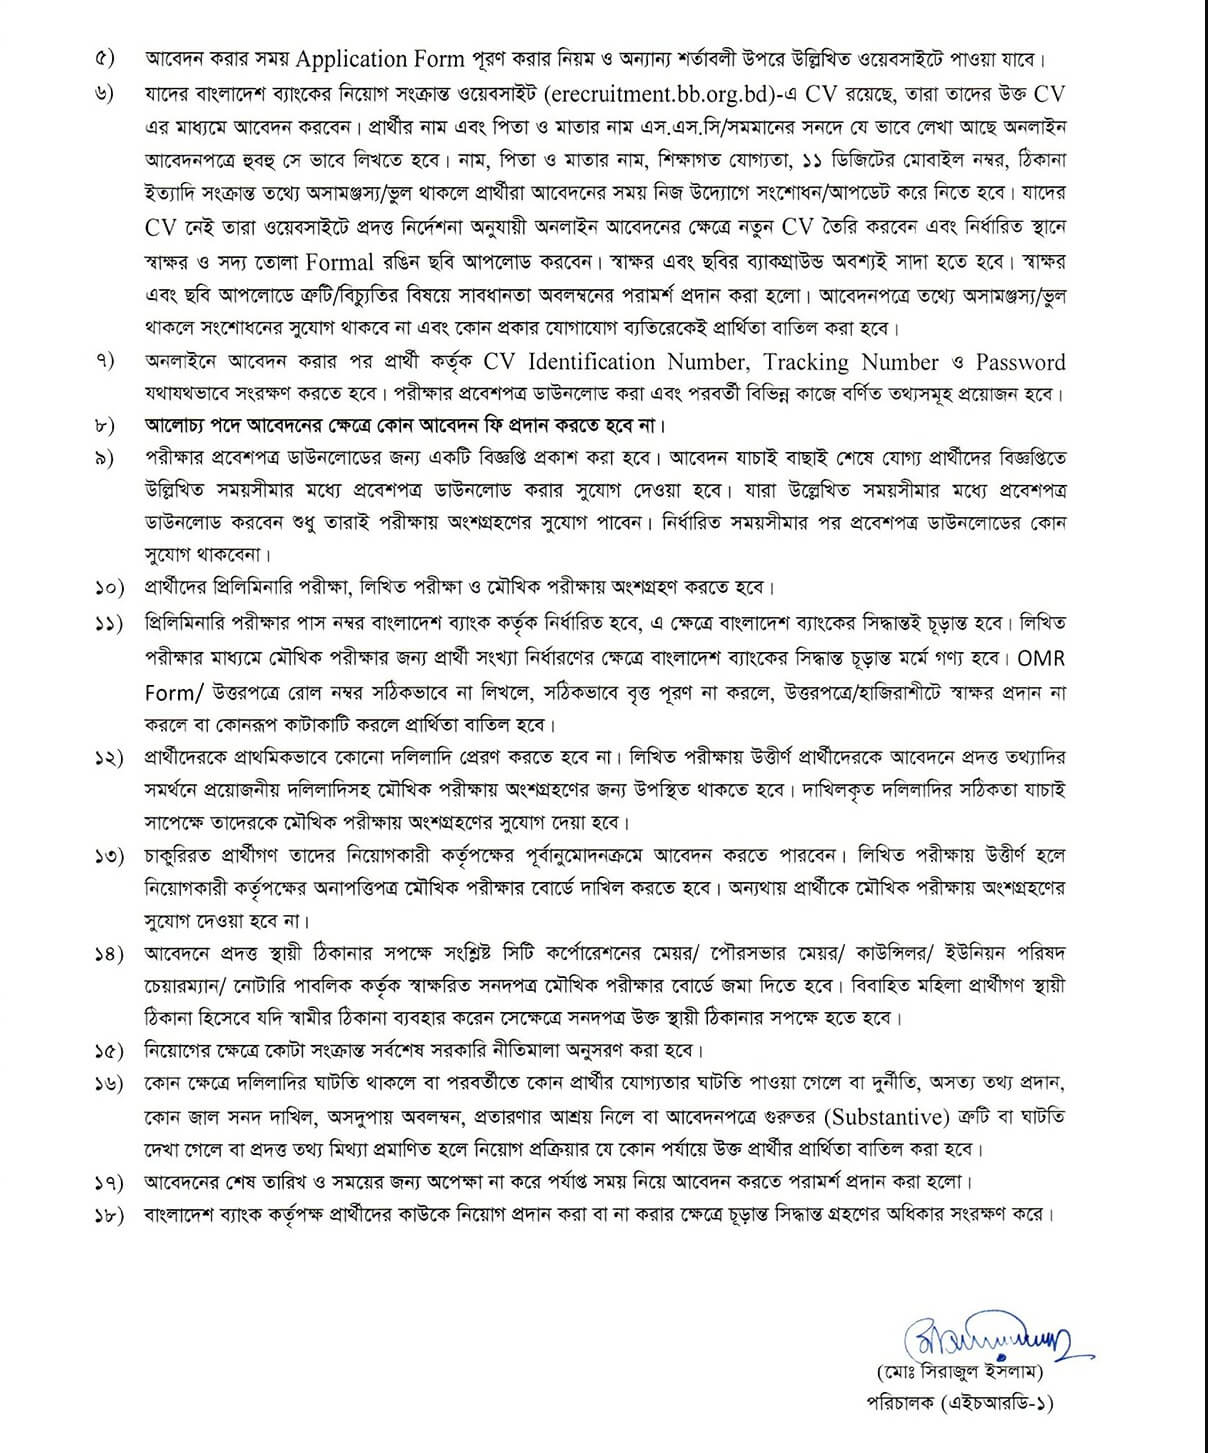 বাংলাদেশ ব্যাংক নিয়োগ বিজ্ঞপ্তি ২০২৩-১০০ টি শূন্য পদে নিয়োগ দেবে | Bangladesh Bank Recruitment Circular 2023